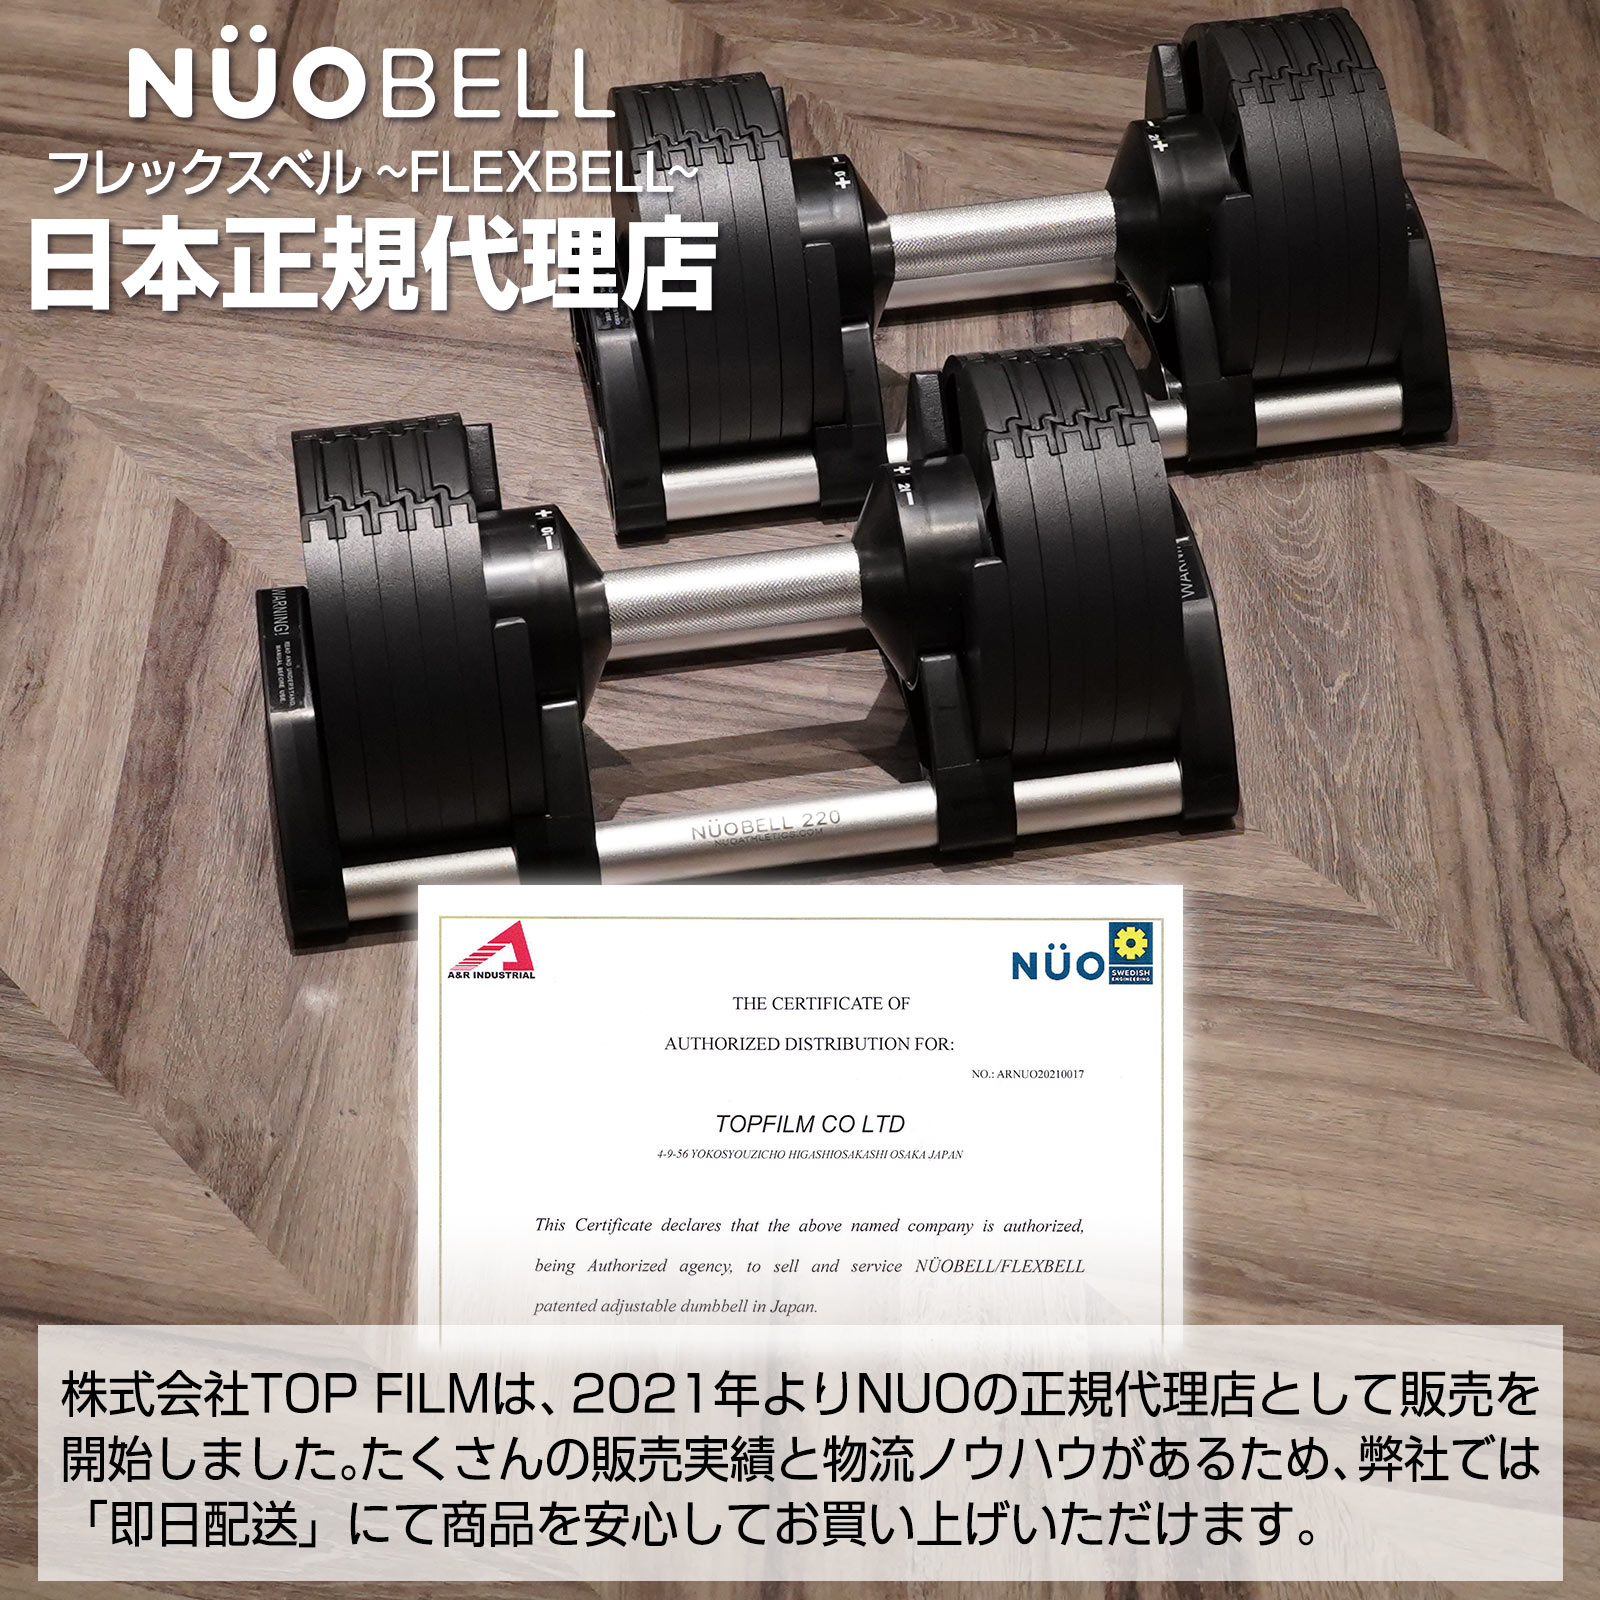 ダンベル 可変式ダンベル フレックスベル 20kg 2kg刻み NUO正規品 